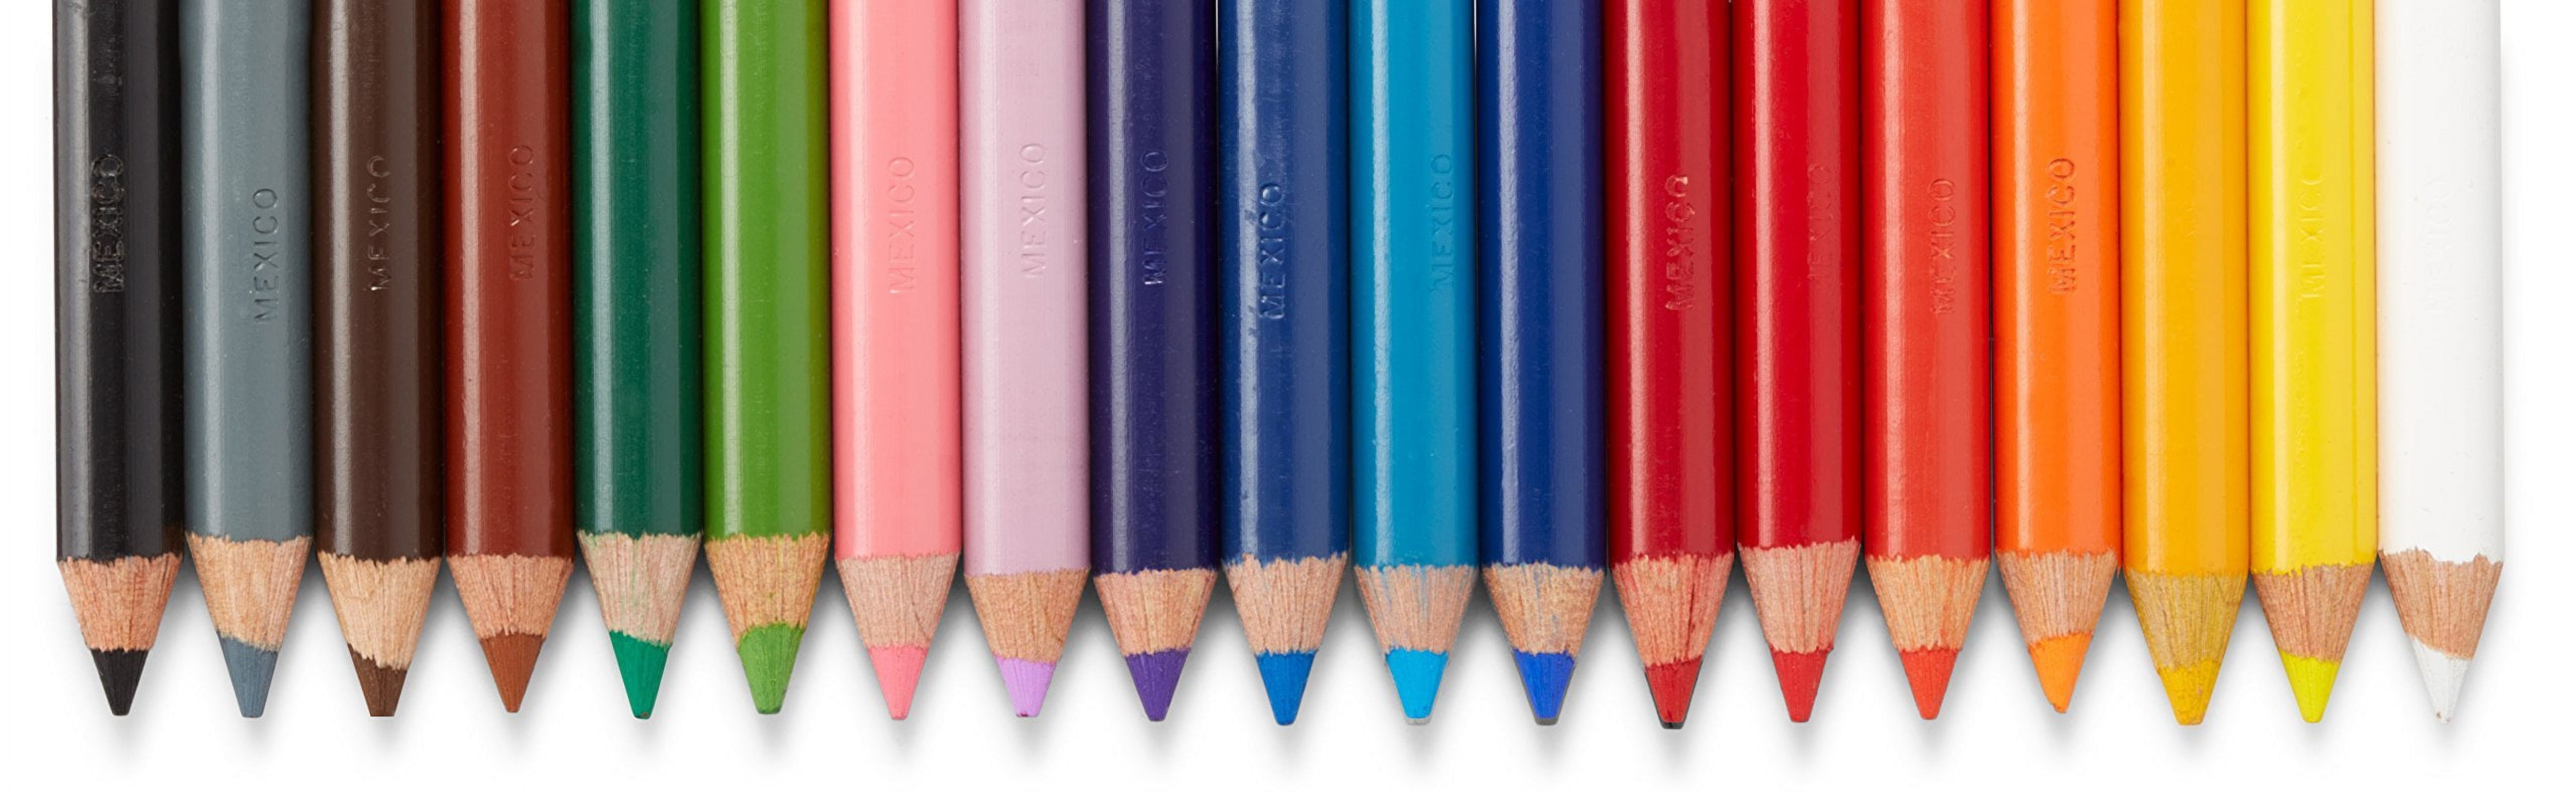 Ten pencils. Цветные карандаши колор пенсил. Цветные карандаши призмаколор. Карандаши призмаколор пенсил. Ребенок карандашом.